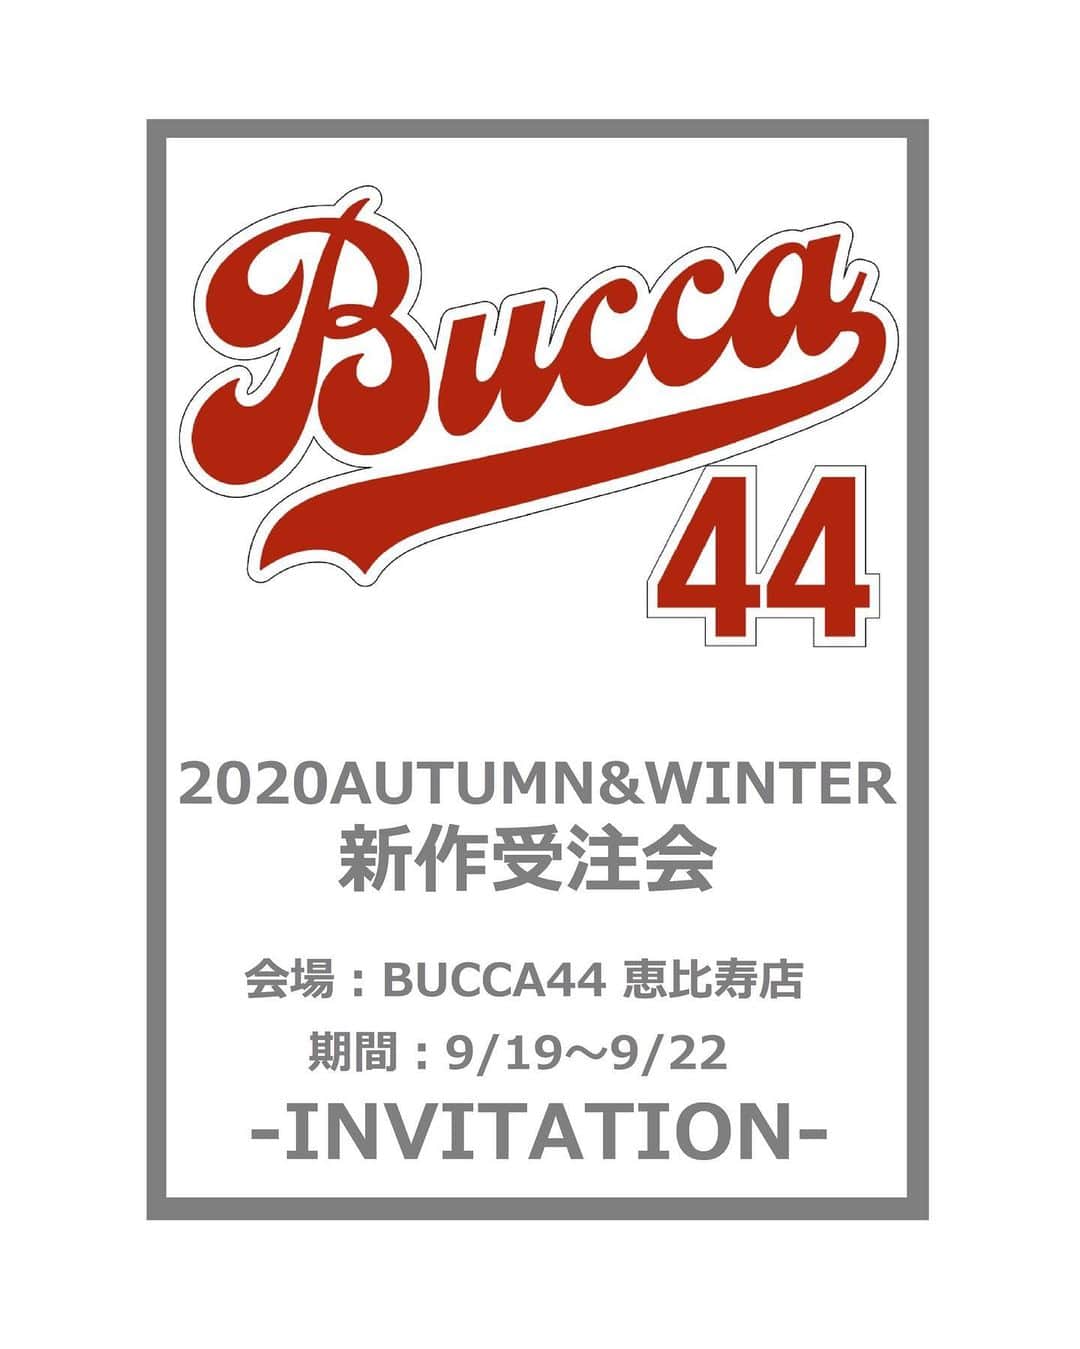 BUCCA 44のインスタグラム：「【ご案内】 9/19（土）～9/22（火）までの期間中 BUCCA 44恵比寿店では、20AW新作商品受注会を行います。 新作アイテムを一挙にご覧いただける内容となっております。 また期間中では一部お買い得商品もご用意いたしております。  ※コロナ禍に合わせて、入店制限を行う場合も御座います。以下の取り組みに着手し、実施してまいります。 ・ ・スタッフのマスク着用義務化 ・スタッフのこまめな手洗い消毒の徹底 ・店内及び共有備品のこまめな消毒の実施 ・レジカウンターへの飛沫感染防止シートの設置  予めご了承いただけます様、何卒宜しくお願い申し上げます。」